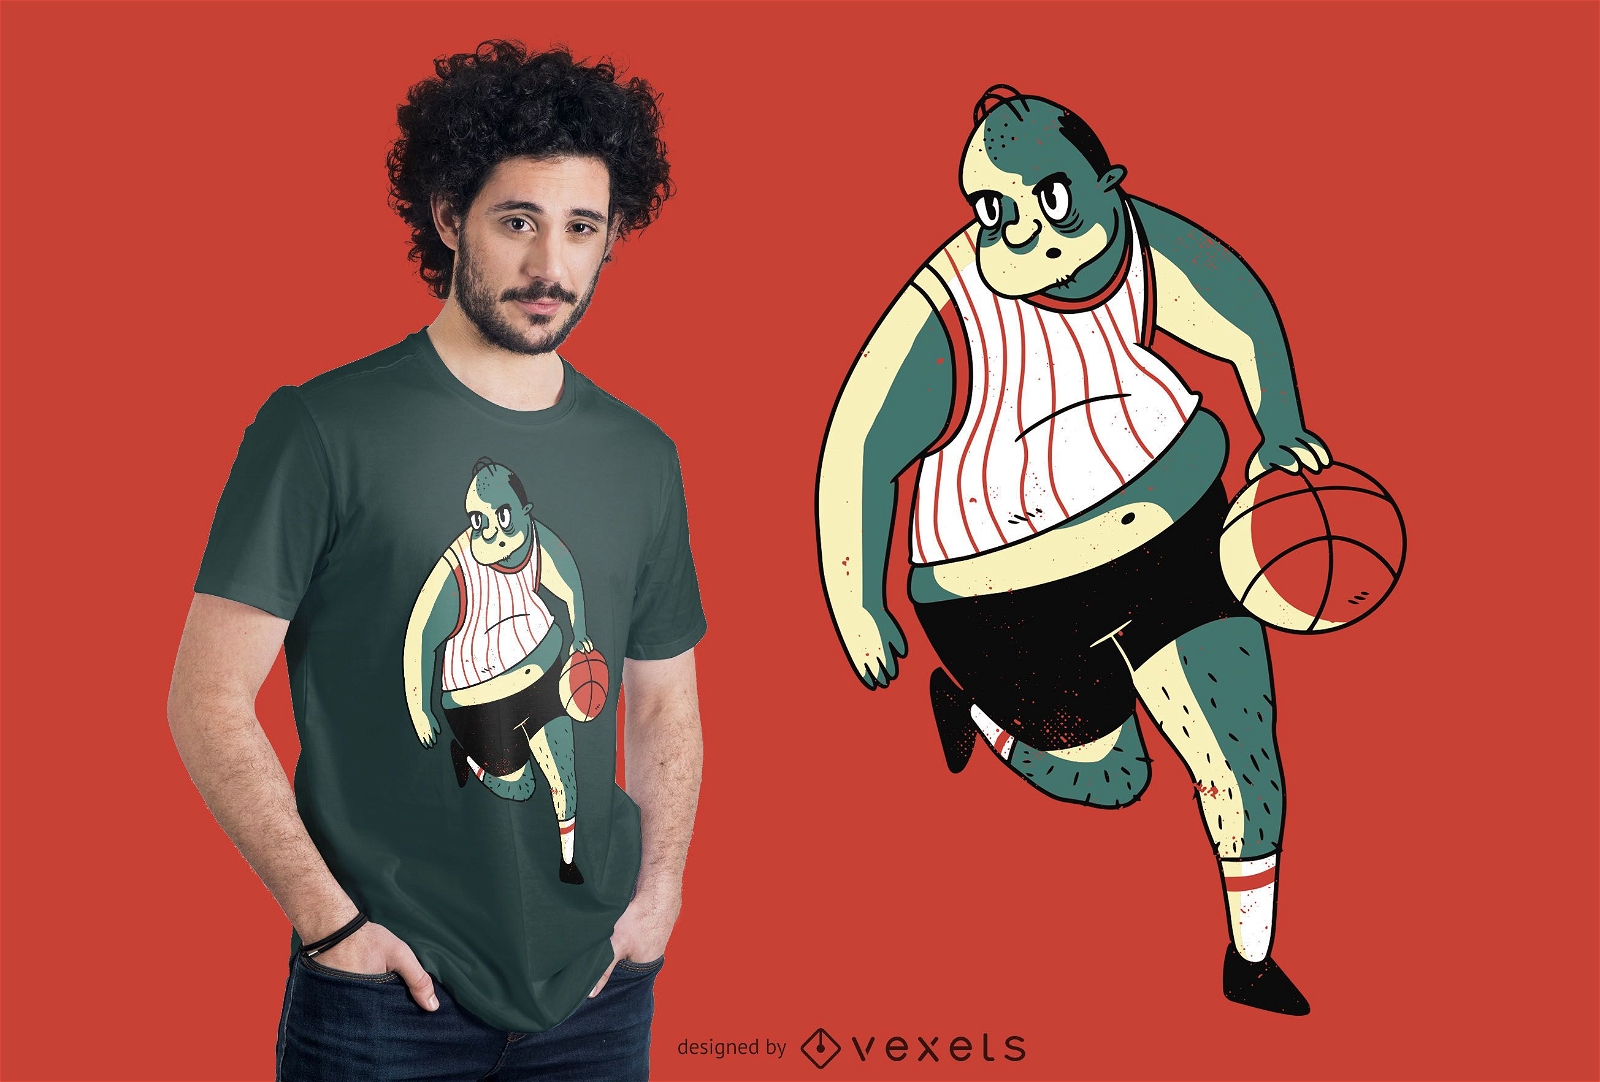 Diseño de camiseta de jugador de baloncesto con sobrepeso.